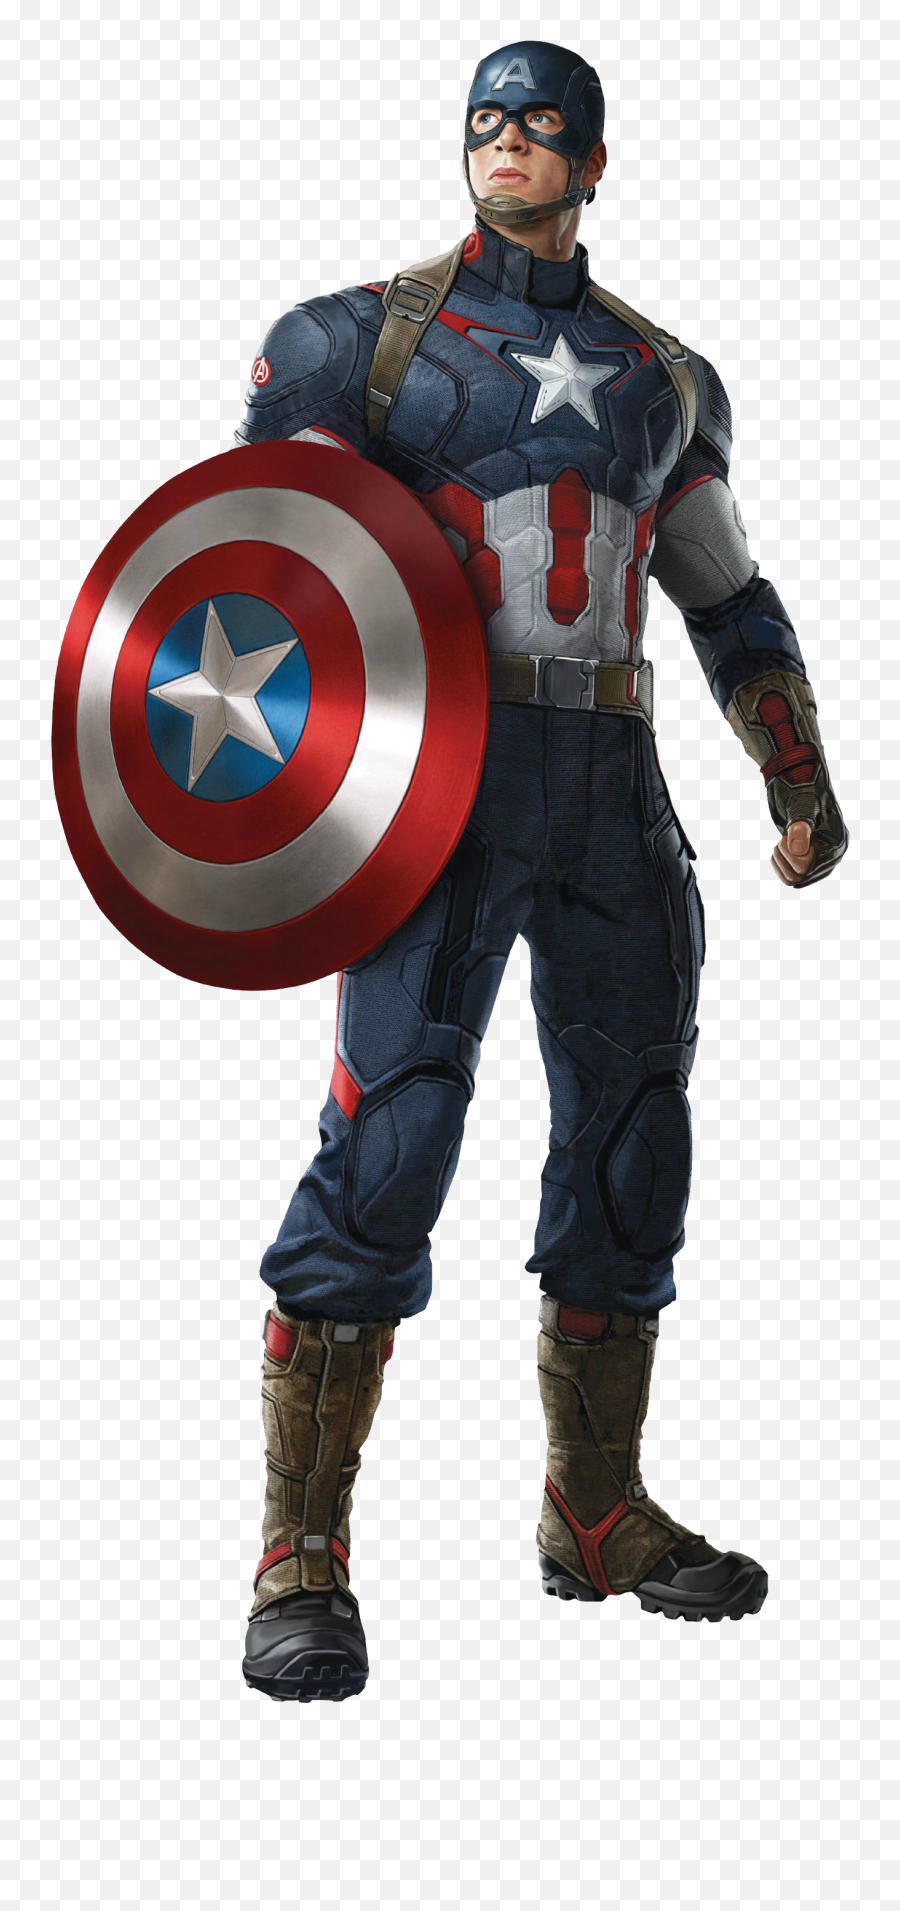 Free Transparent Captain America Png - Captain America Png Emoji,Captain America Facebook Emoticon